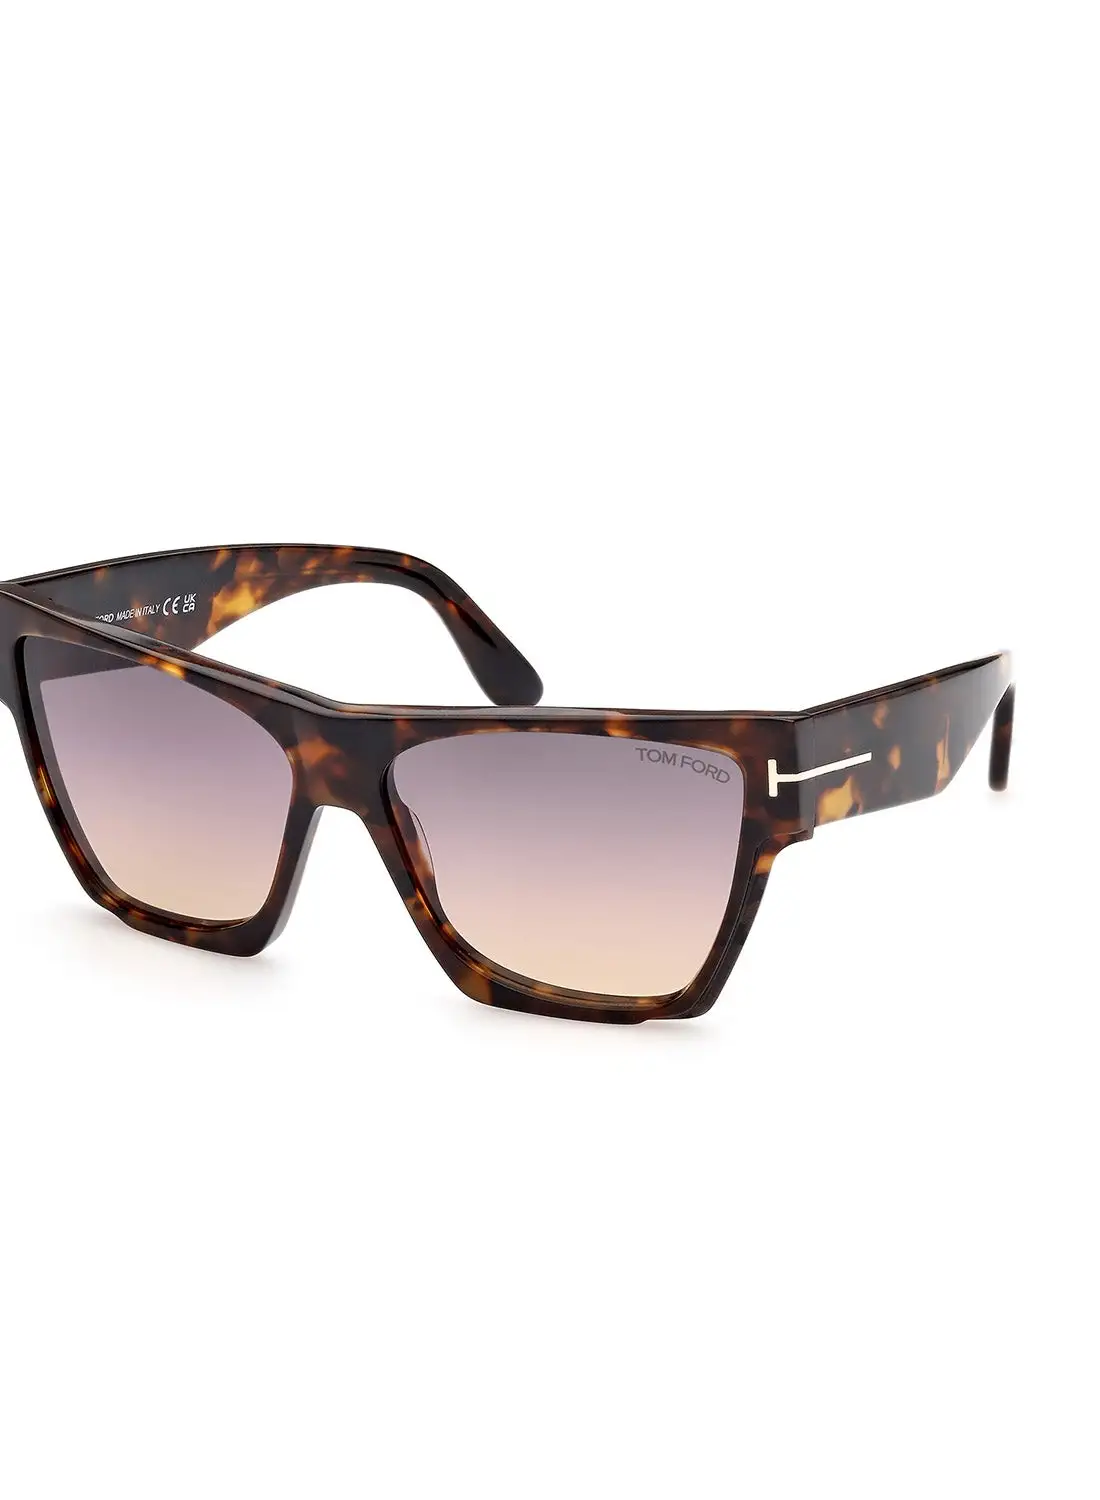 TOM FORD Women's UV Protection Asymmetrical Sunglasses - FT094255B59 - Lens Size: 59 Mm